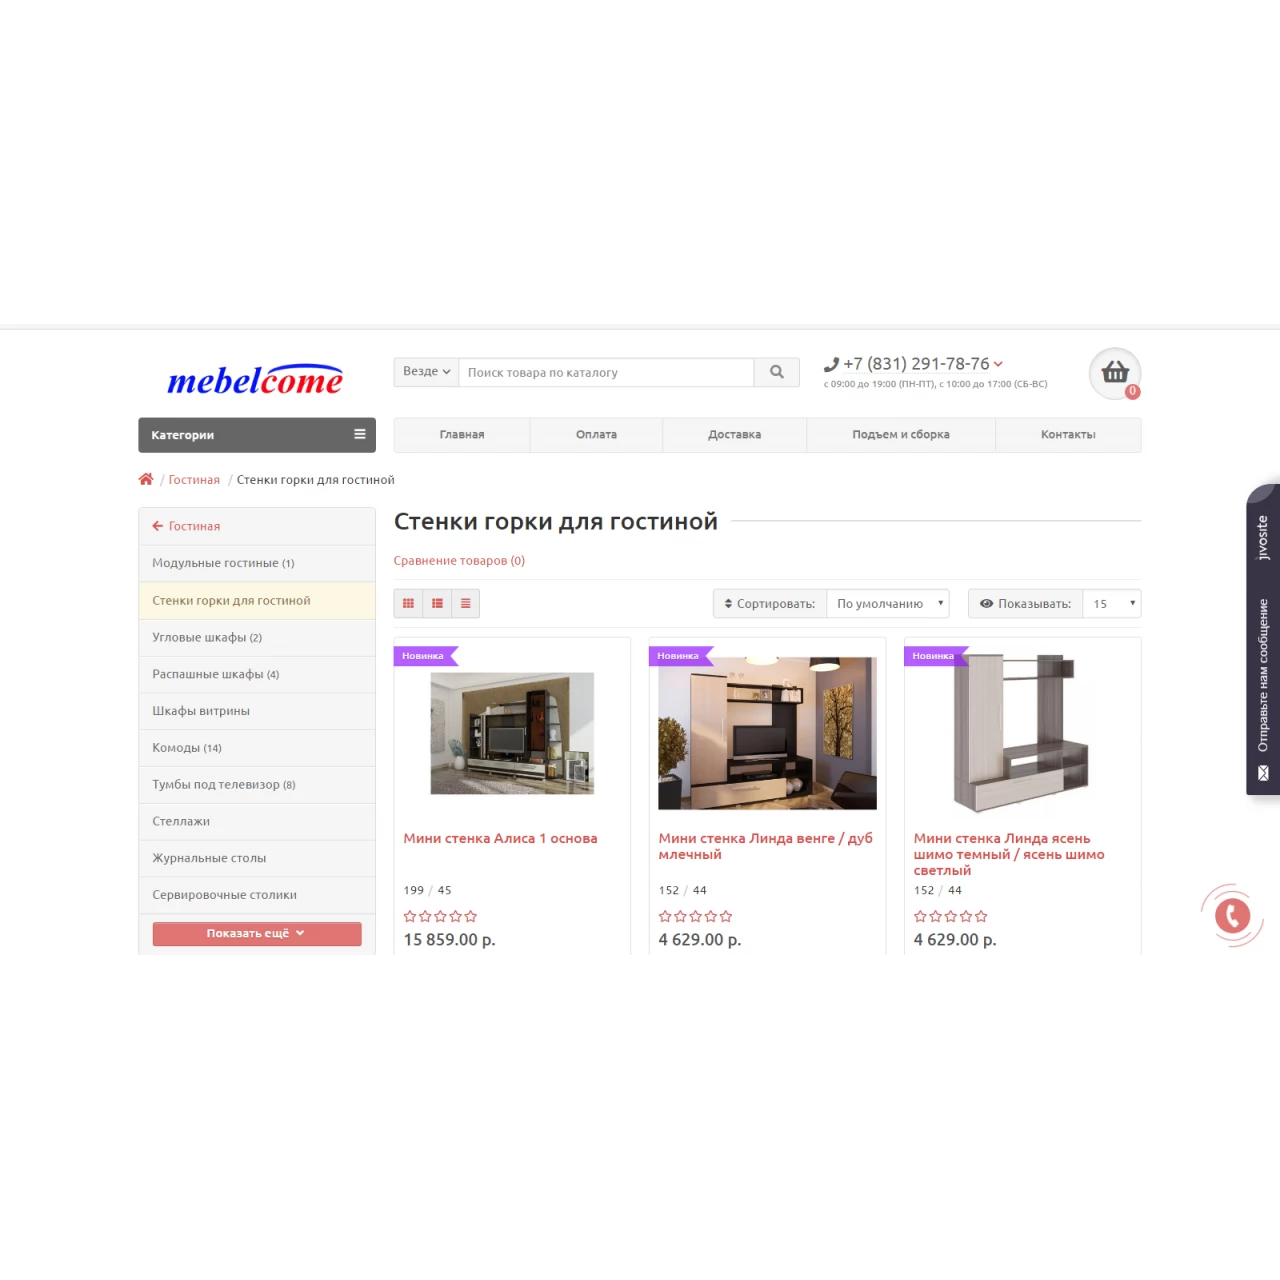 Mebelcome - скрипт интернет магазина мебели и товаров для дома